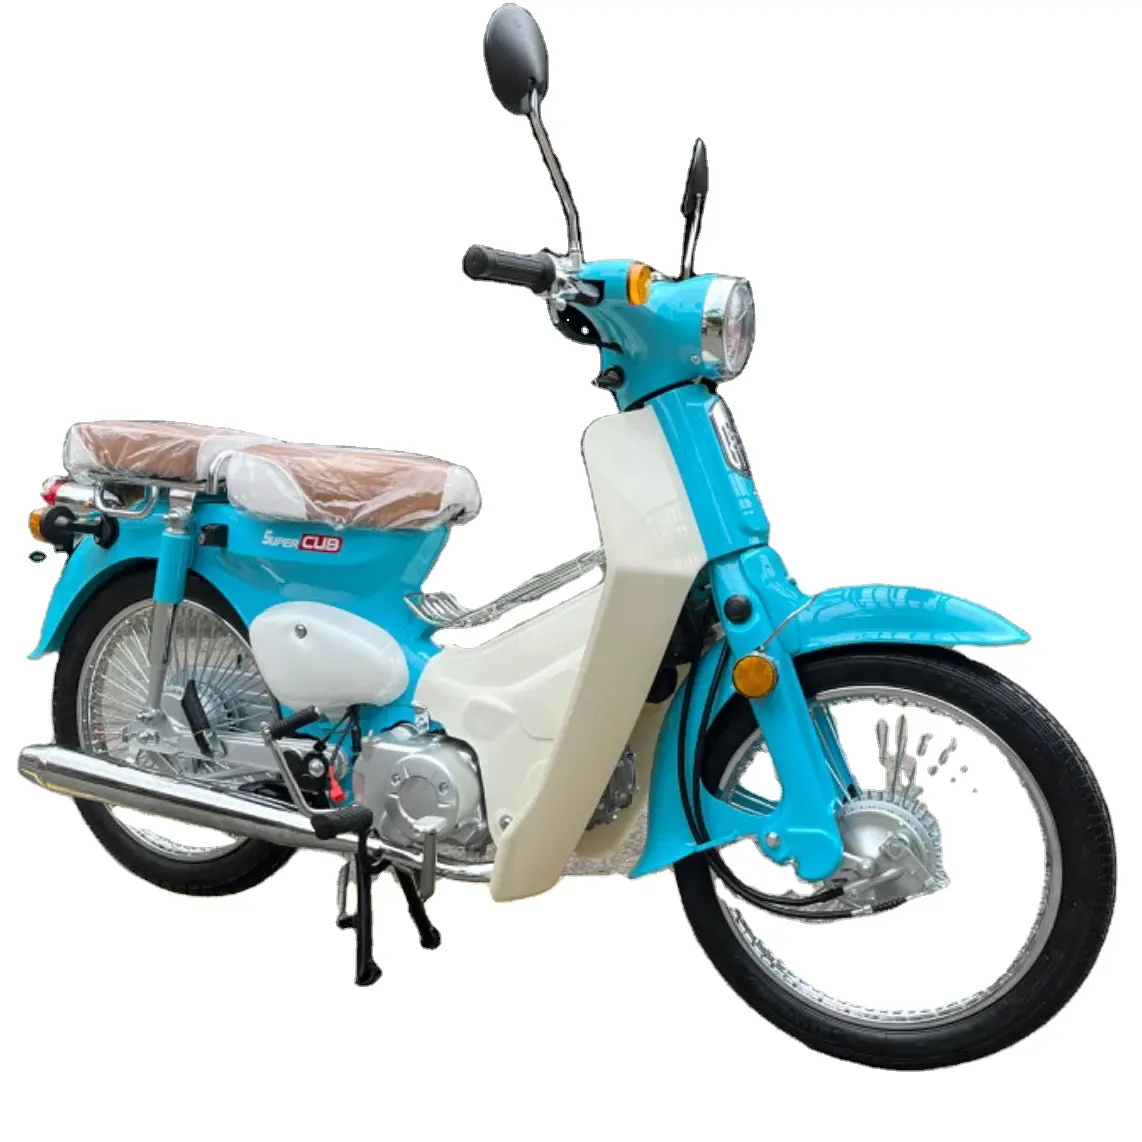 110cc 4-takt Benzine Motorfiets 75 Km/h Eencilinder 4-takt Lucht 110cc Welp Bikes Underbone/Welp Bike